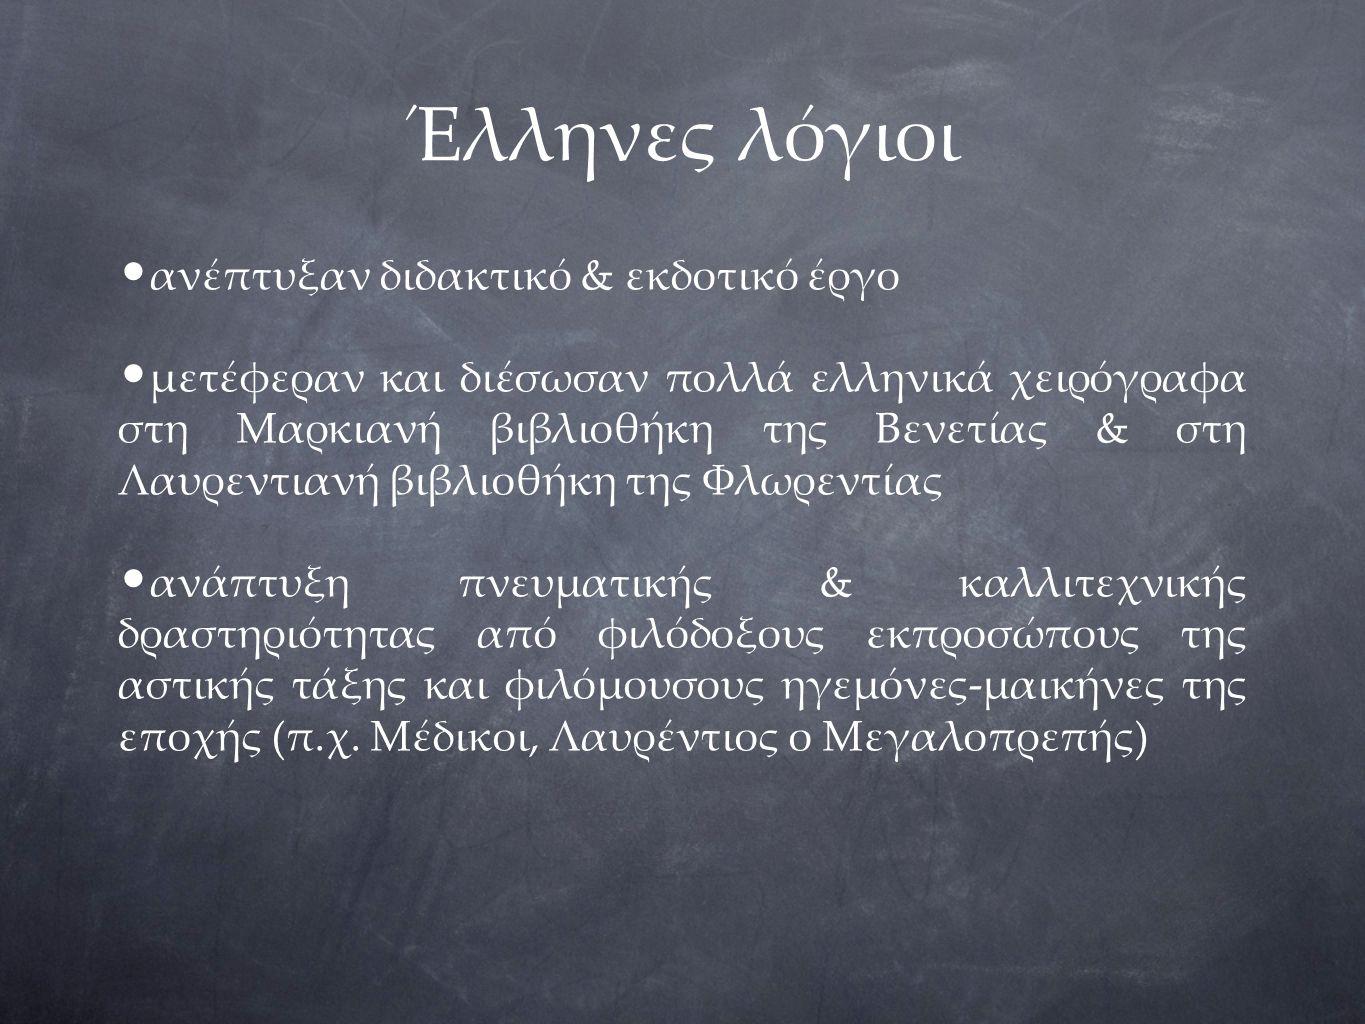 Έλληνες λόγιοι ανέπτυξαν διδακτικό & εκδοτικό έργο